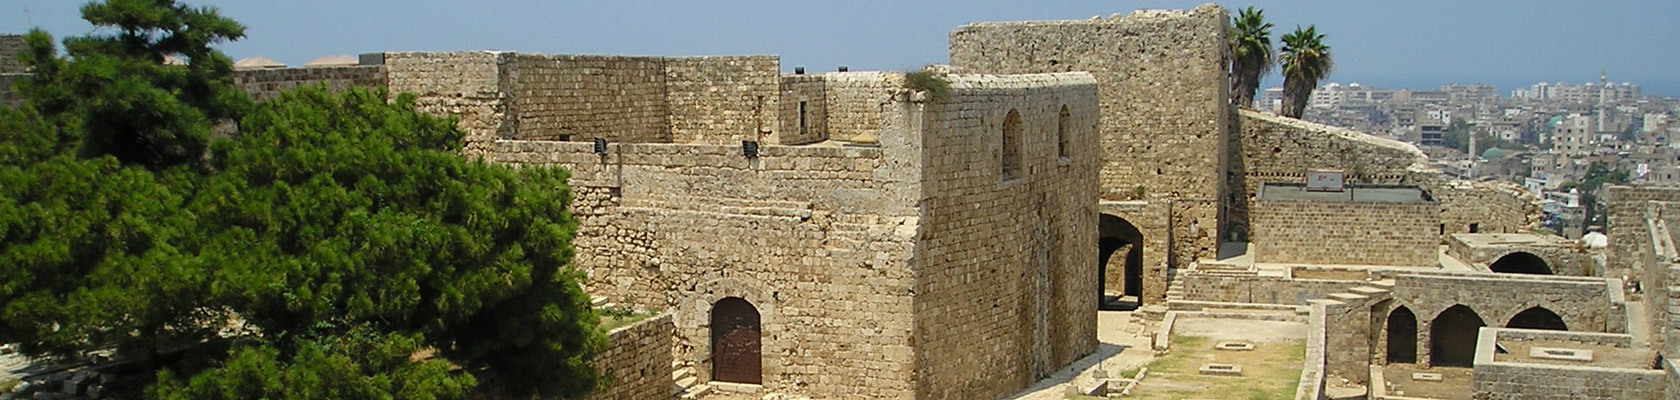 Saint Gilles Citadel Tripoli